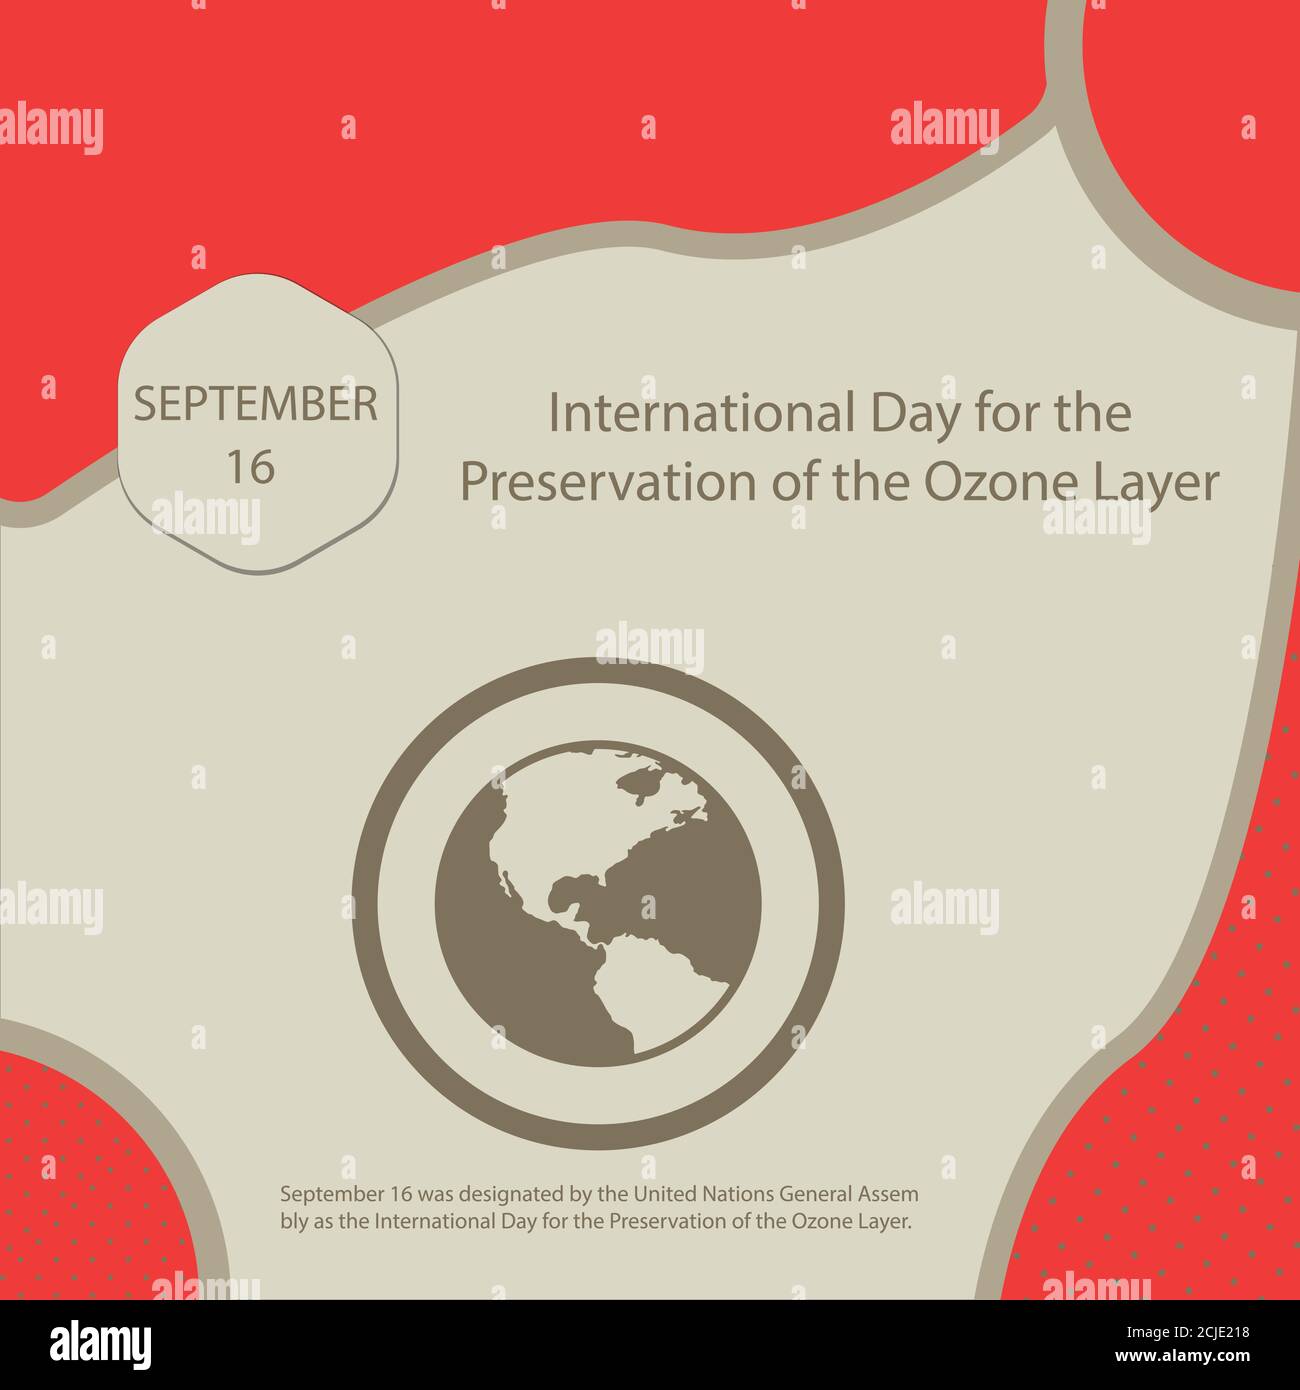 Der 16. September wurde von der Generalversammlung der Vereinten Nationen zum Internationalen Tag für die Erhaltung der Ozonschicht ernannt. Stock Vektor